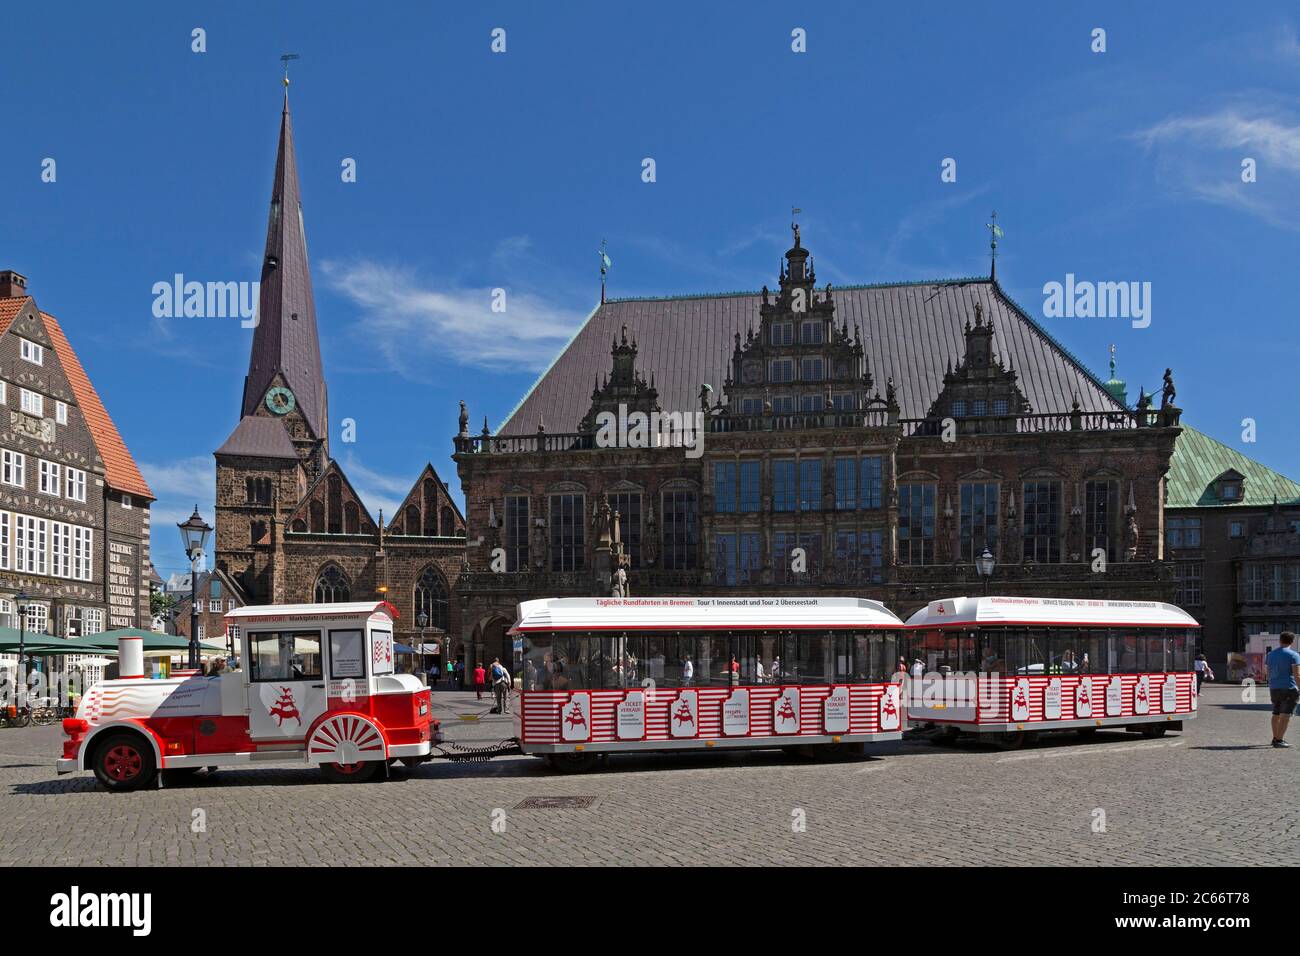 Place du marché avec Liebfrauenkirche (église notre-Dame) et hôtel de ville, Brême, Allemagne Banque D'Images